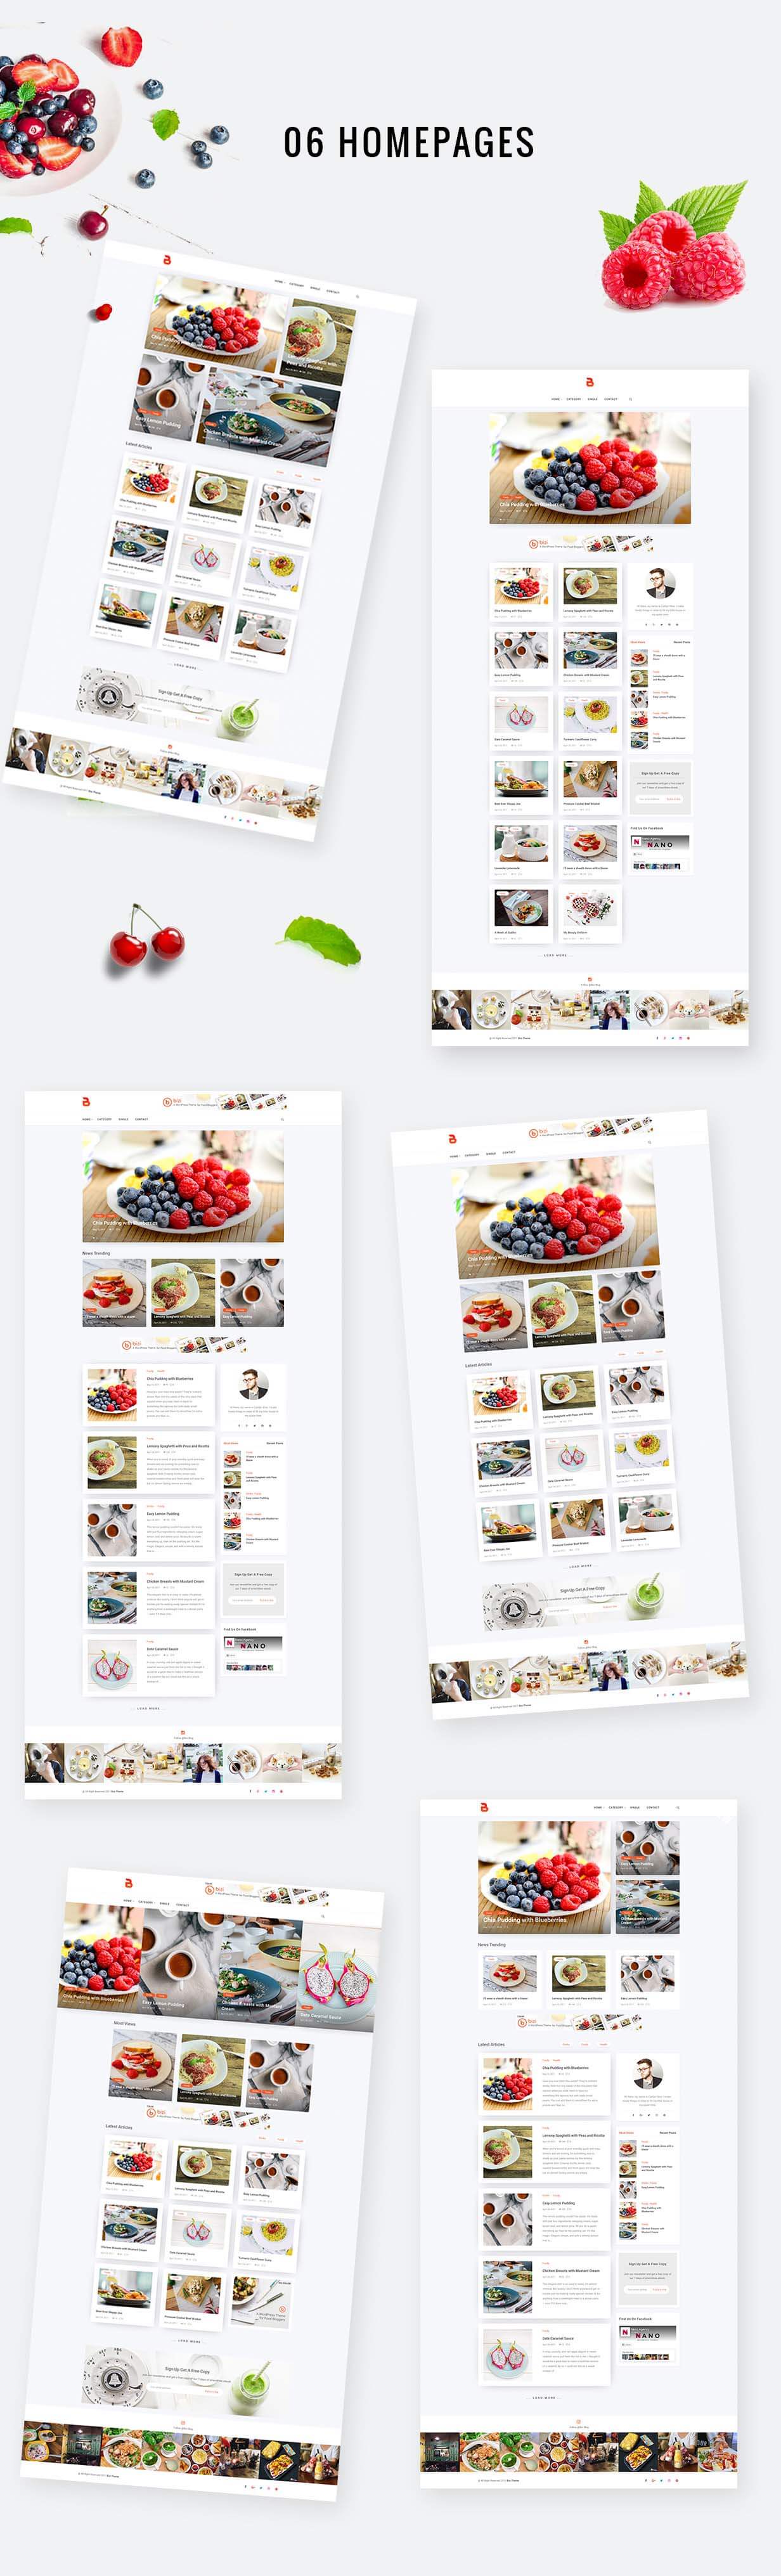 قالب فارسی وبلاگ غذا وردپرس  + آموزش تصویری + بسته نصبی آسان